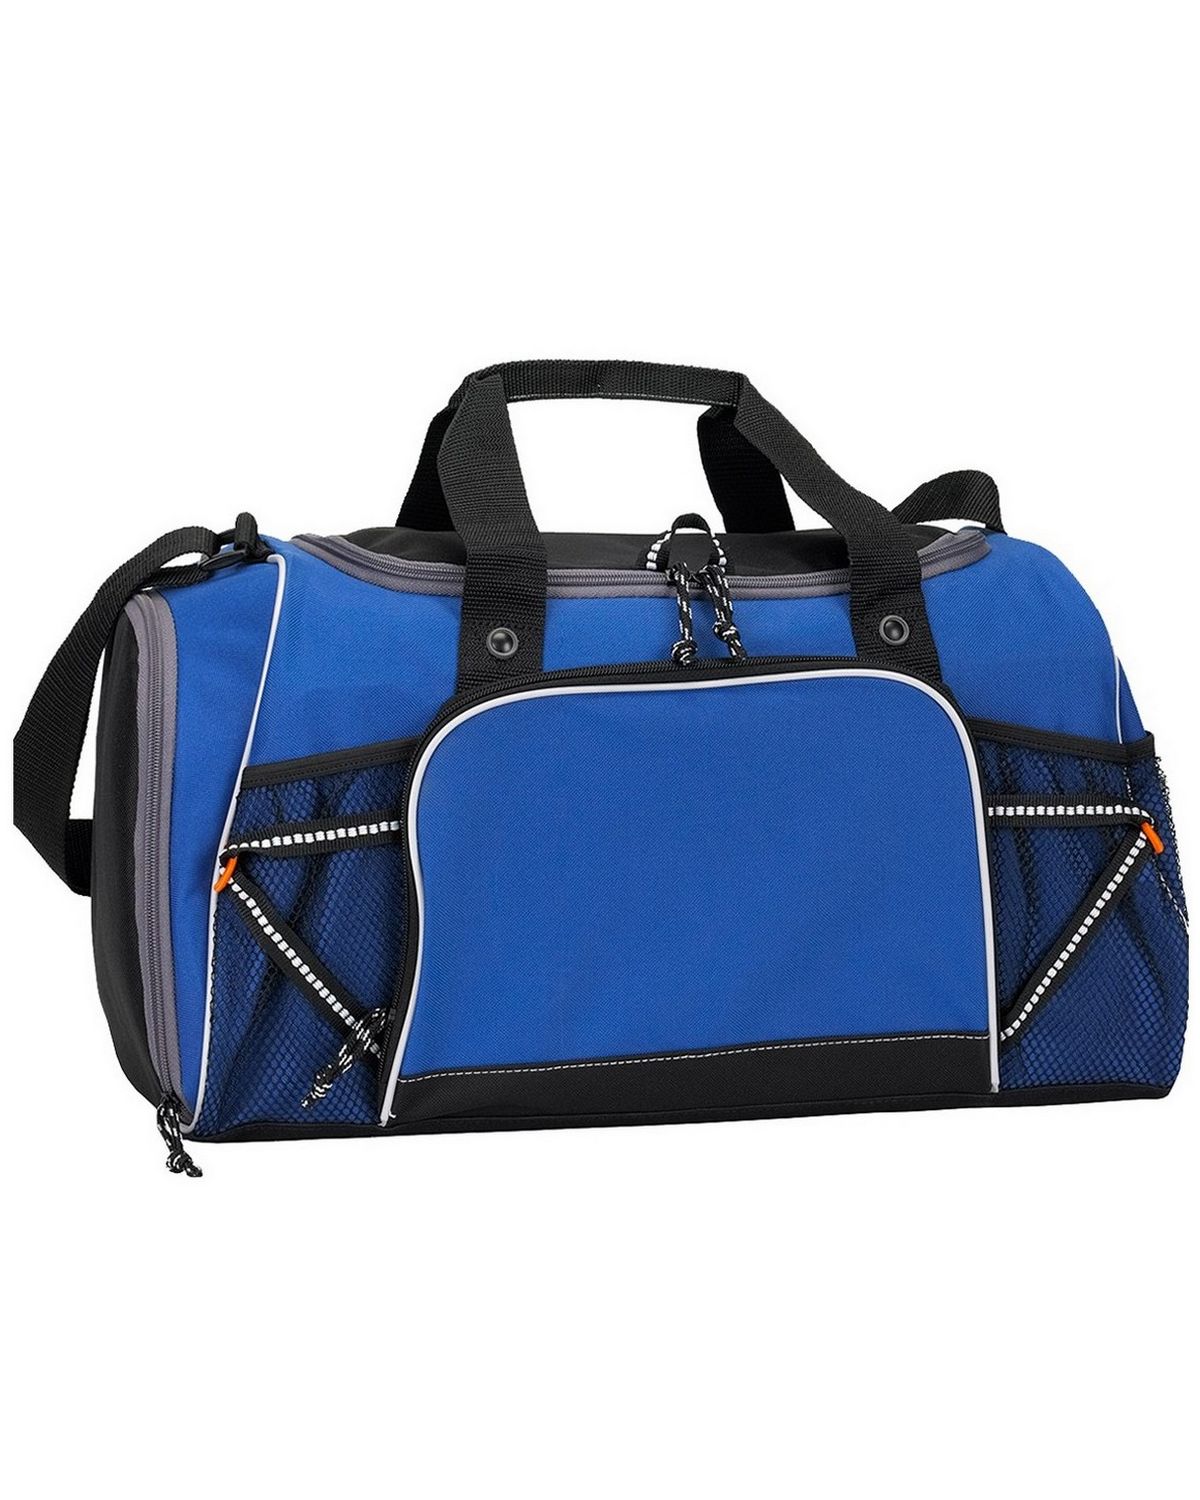 Buy Gemline 4596 Verve Sport Bag